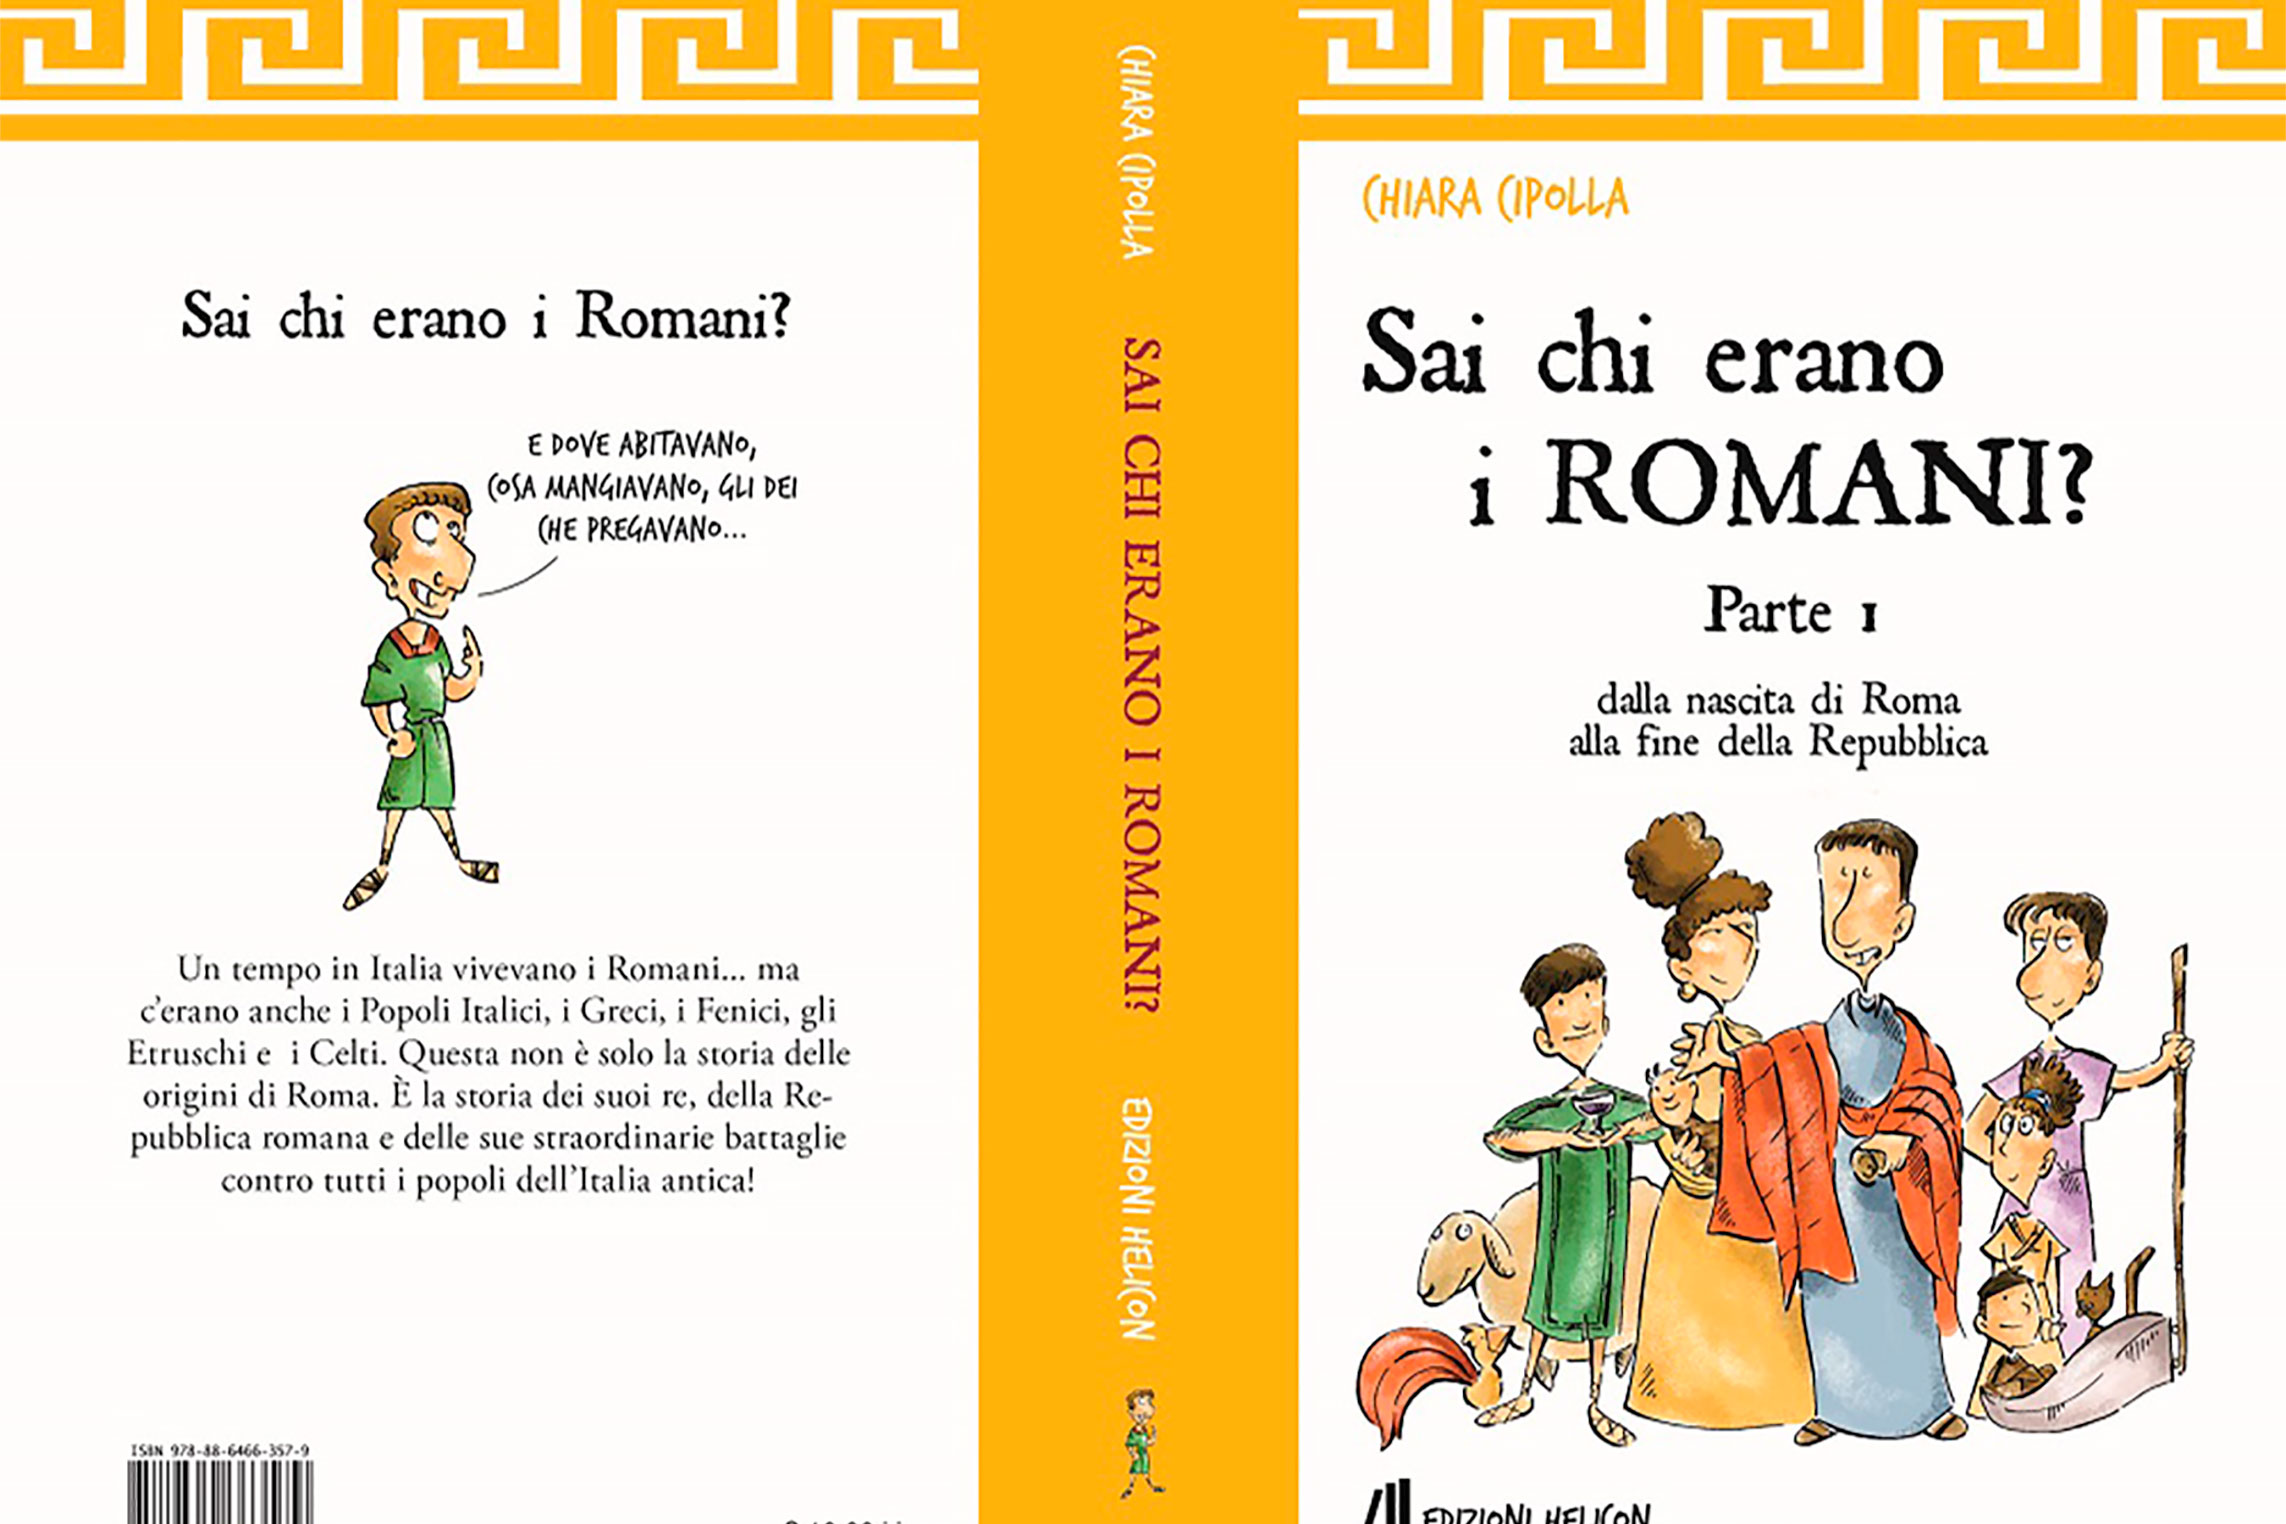 Etruschi e romani. Conosciamoli meglio con i libri illustrati per bambini di Chiara Cipolla